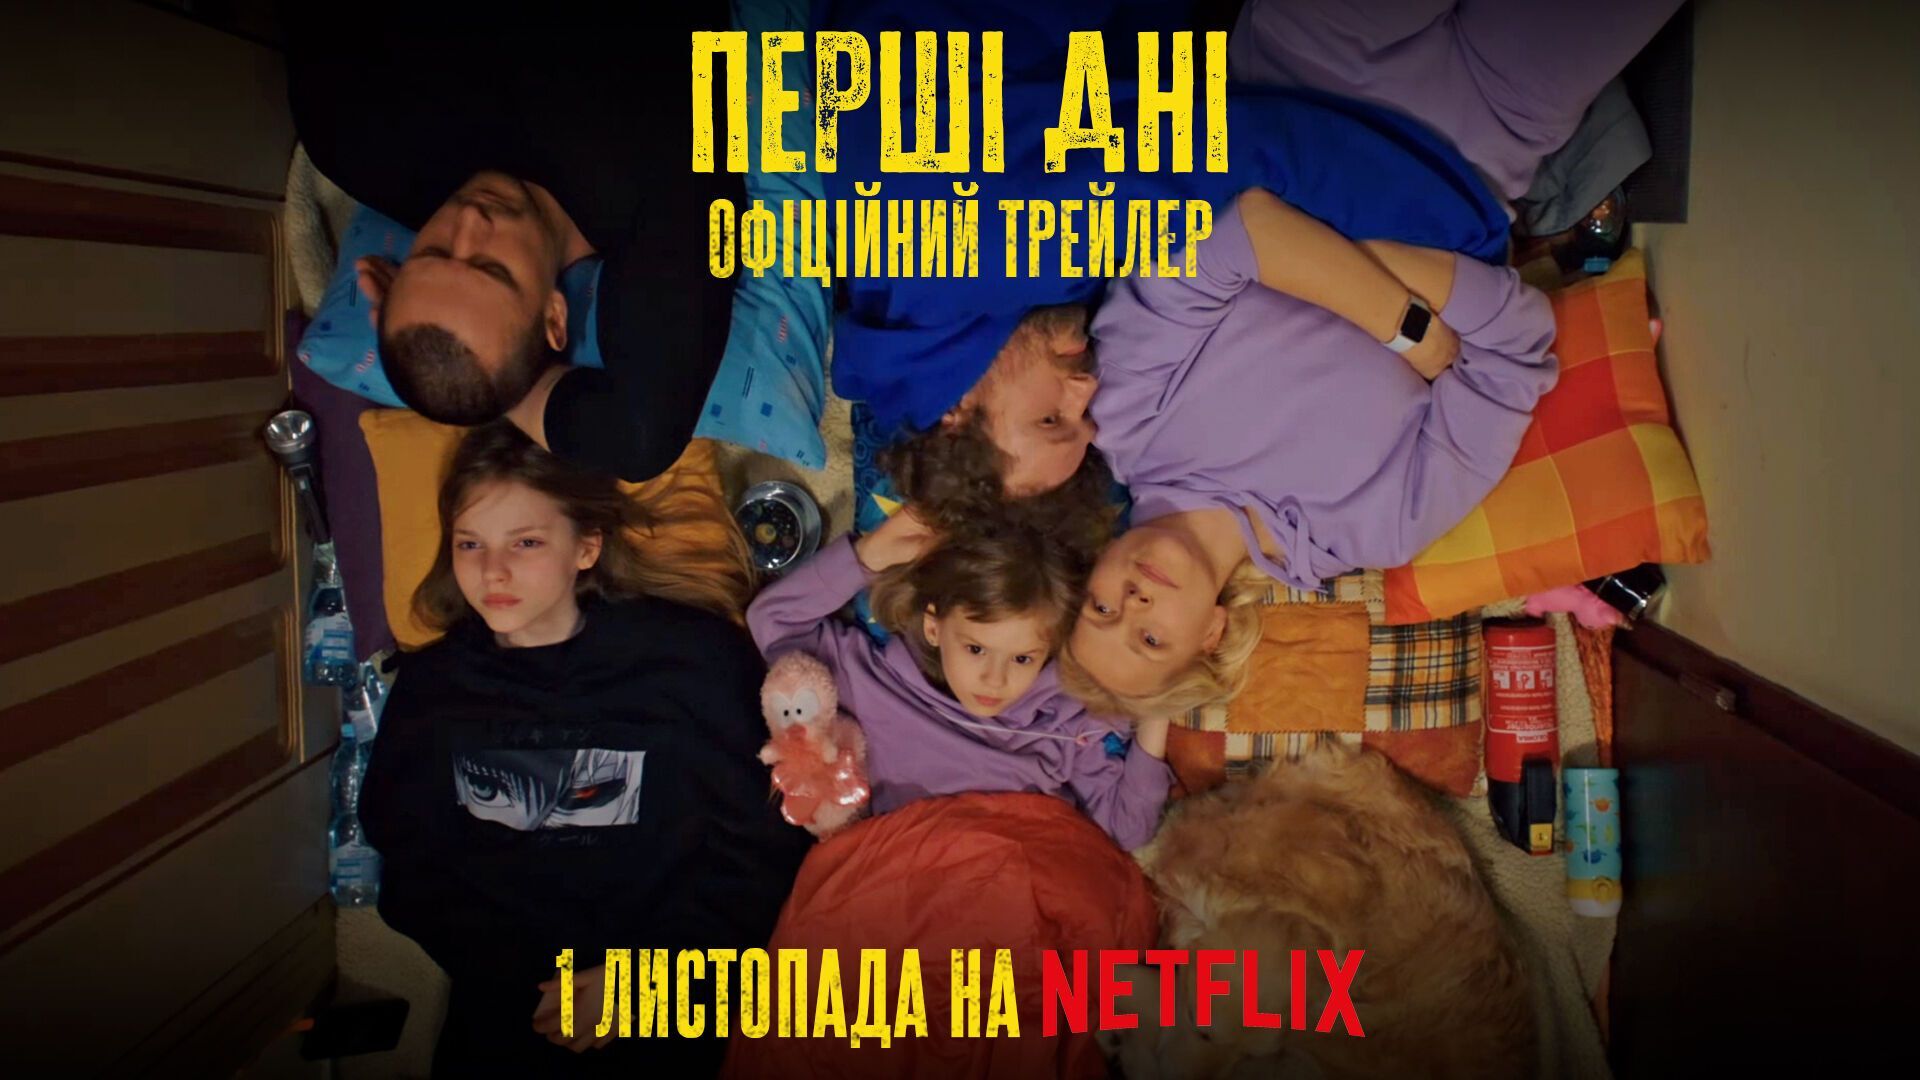 Украинский сериал впервые пригласят на Netflix: трейлер "Первые дни"